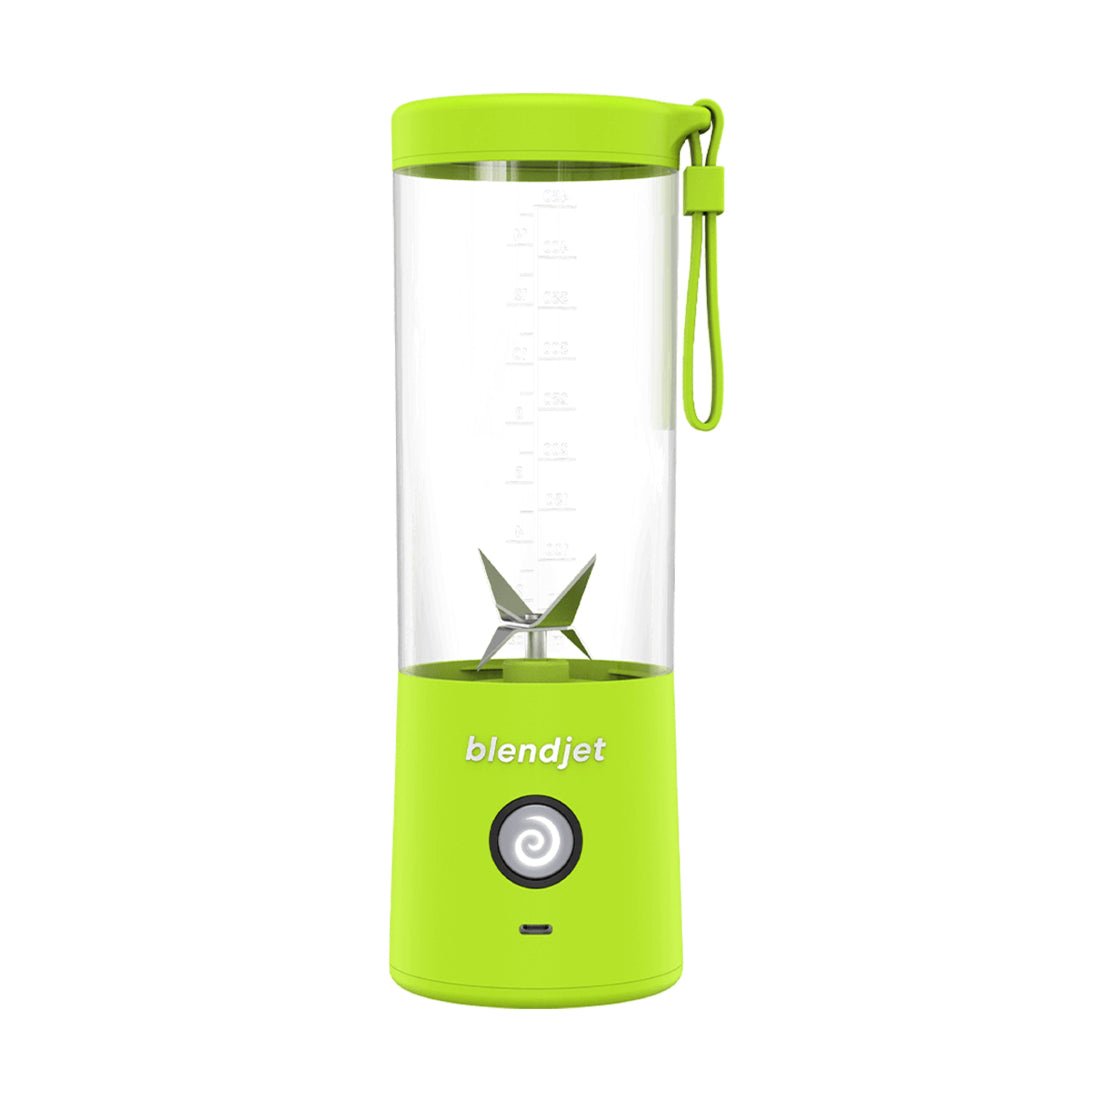 BlendJet 2 Portable Blender - Lime - خلاط - Store 974 | ستور ٩٧٤